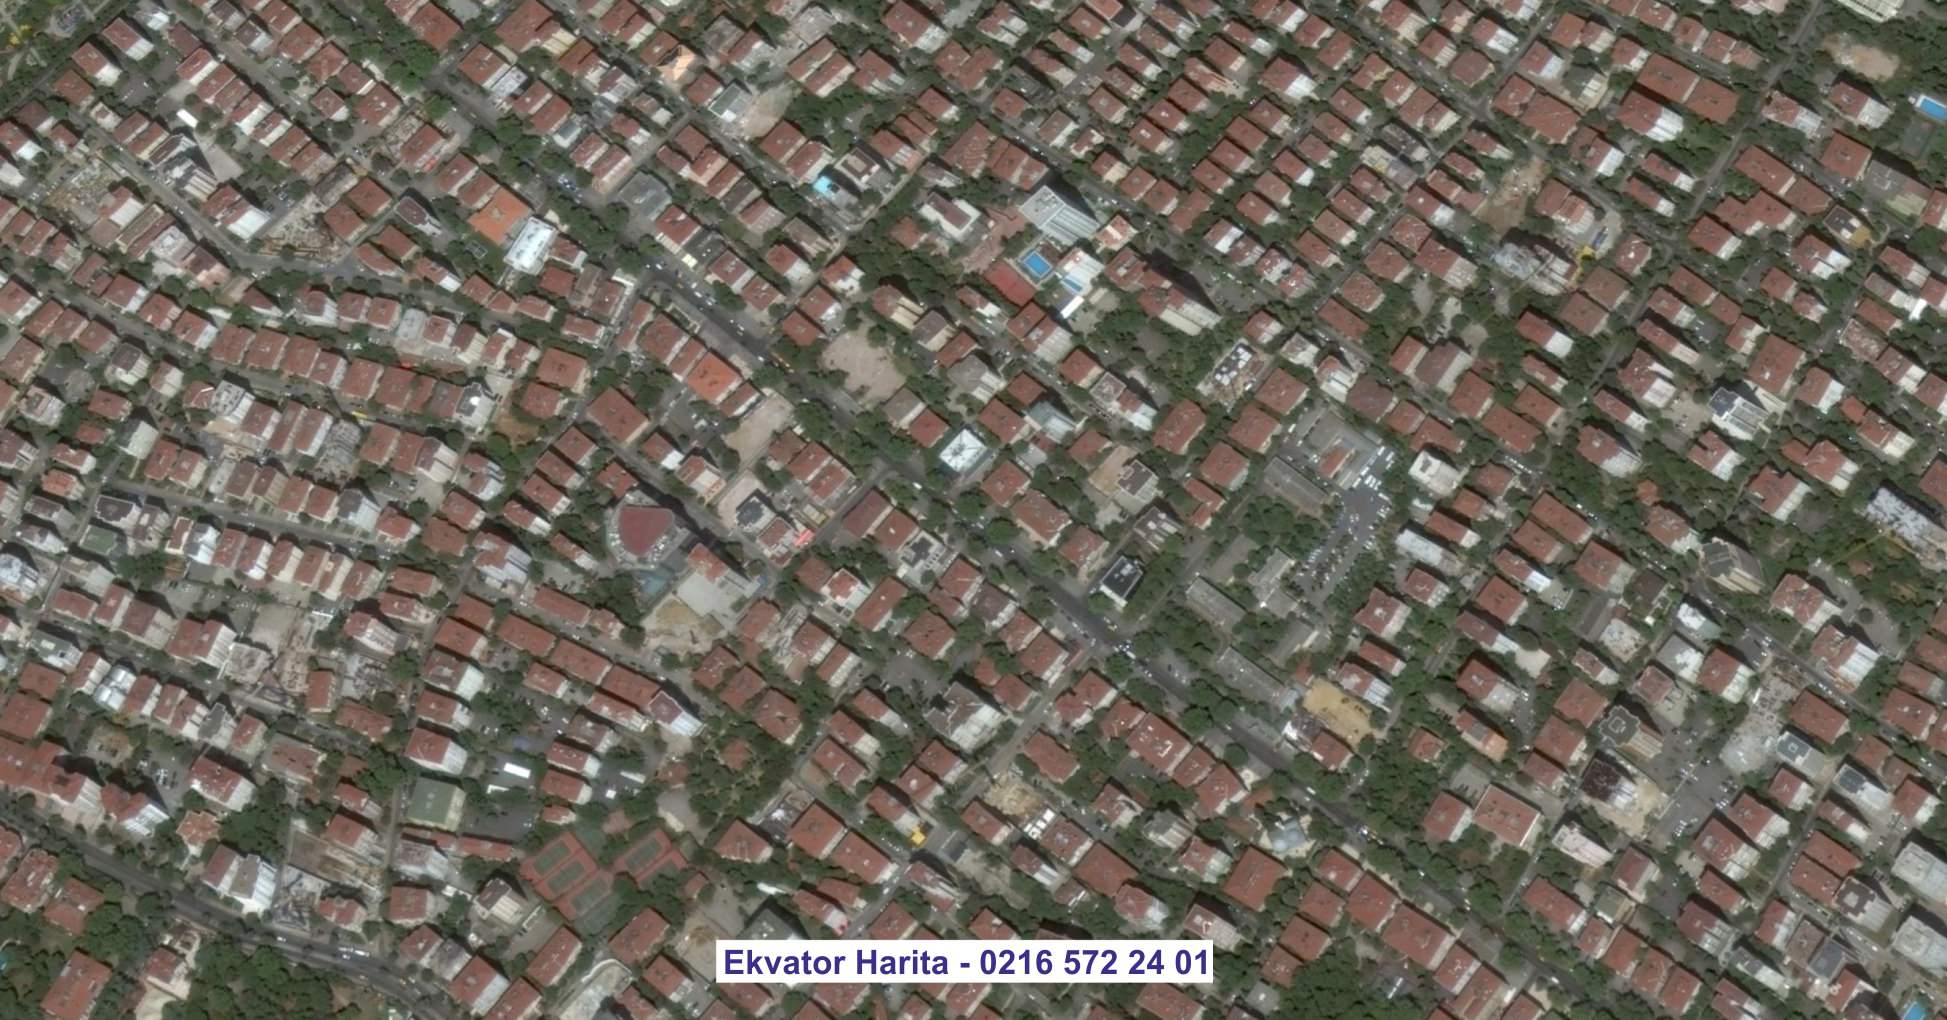 Yalova Uydu Görüntüsü Örnek Fotoğrafı